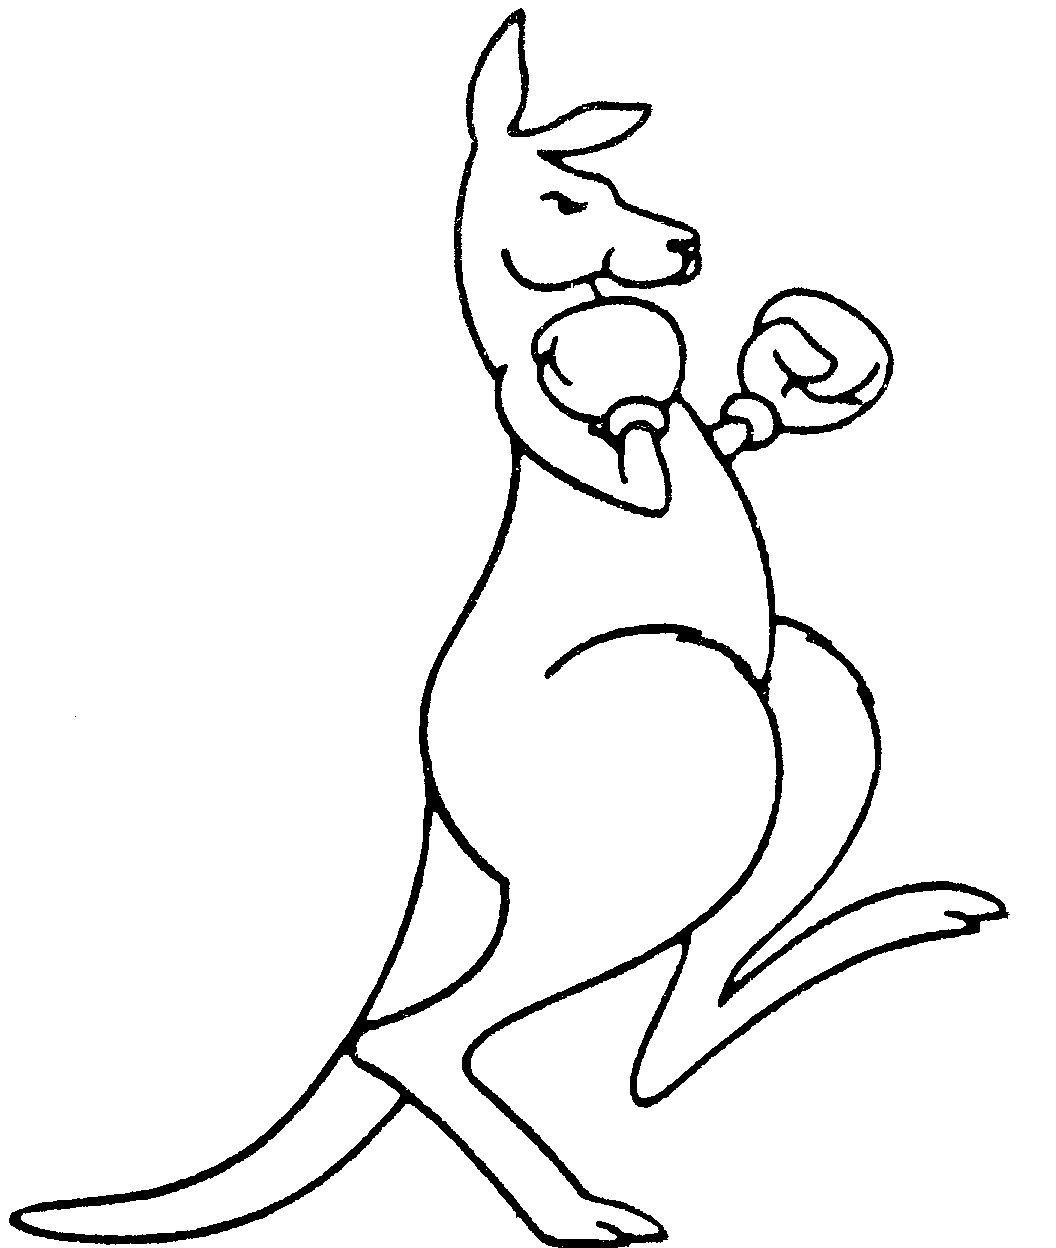 Boxing Kangaroo Logo - boxing kangaroo - Google Search | designtech inspiration | Kangaroo ...